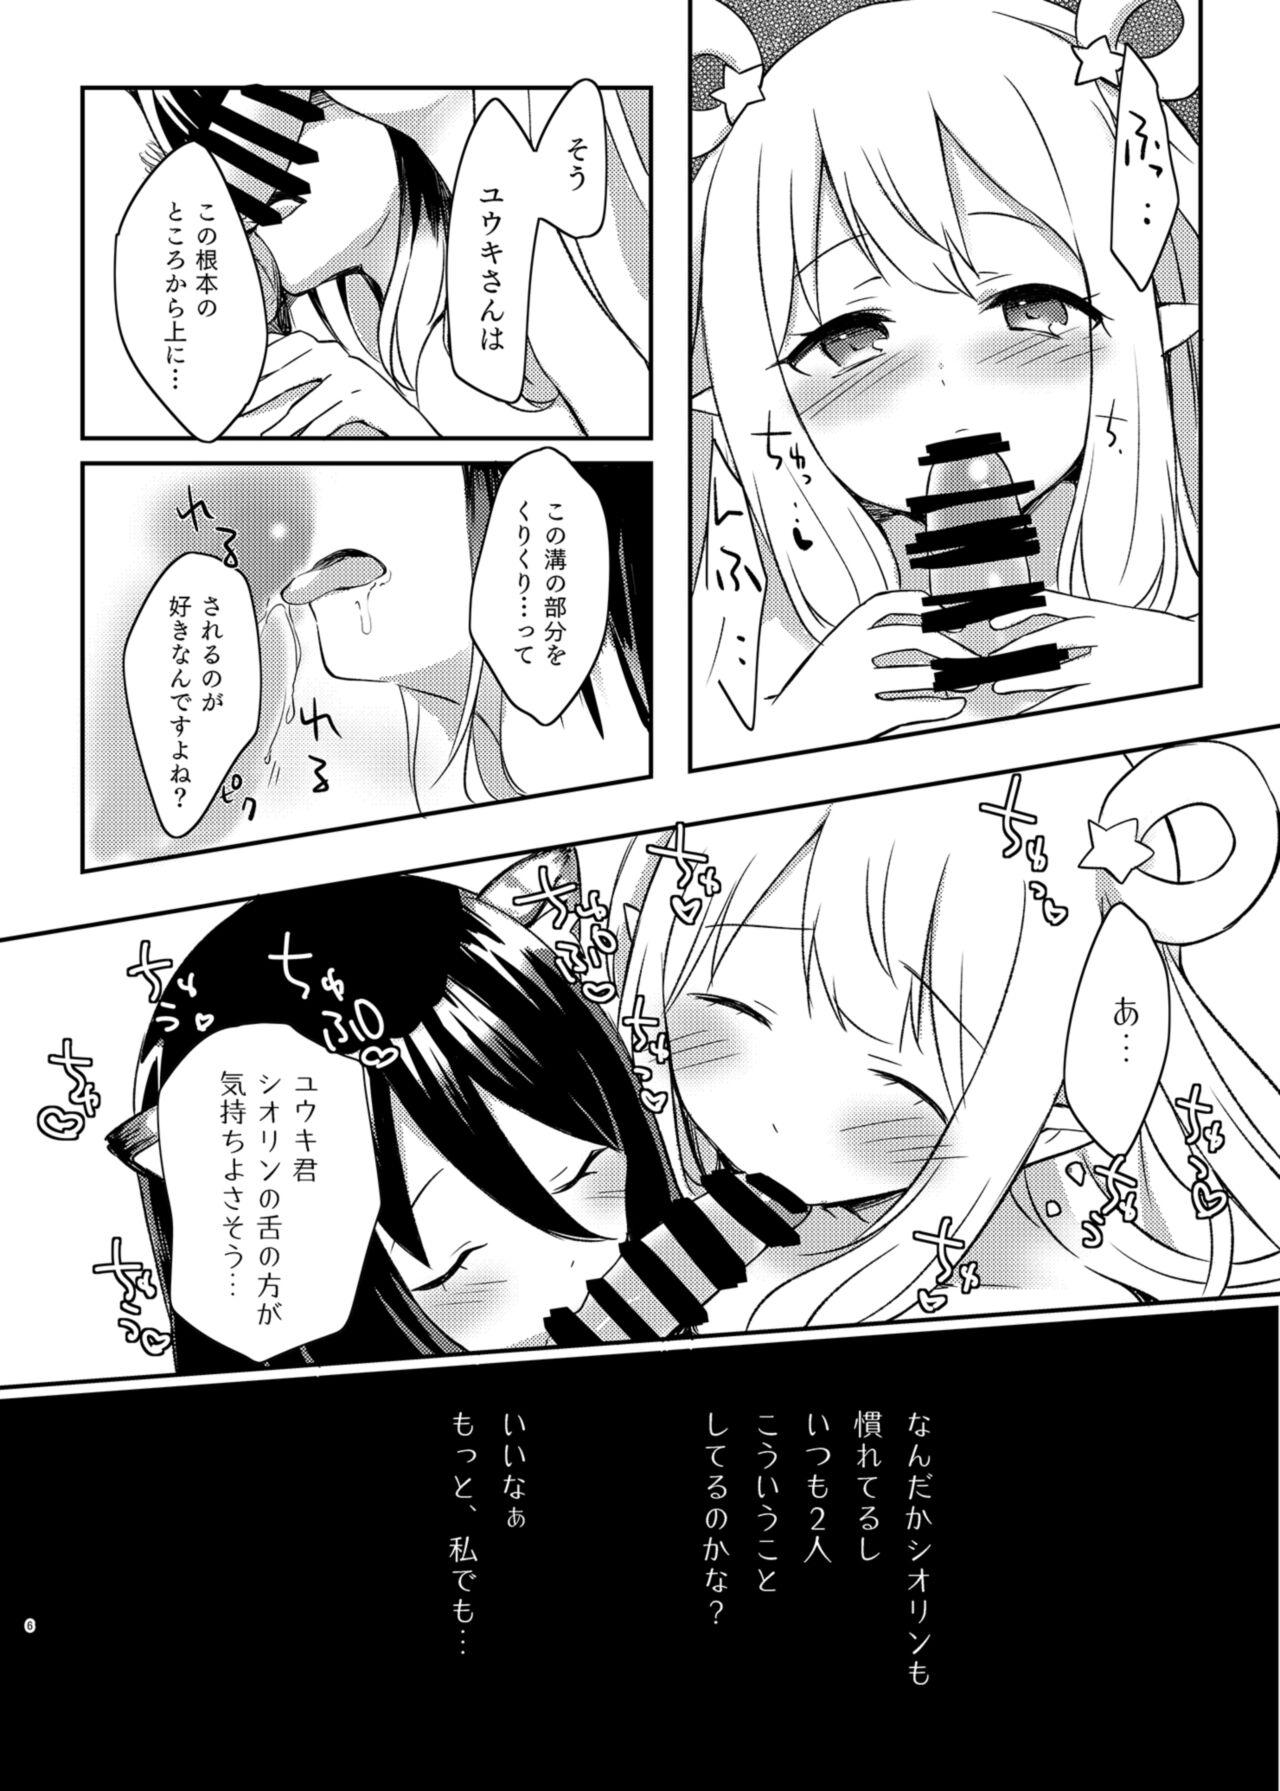 Babes Hatsune to Shiori no Yukemuri Daisakusen - Princess connect Gaydudes - Page 6